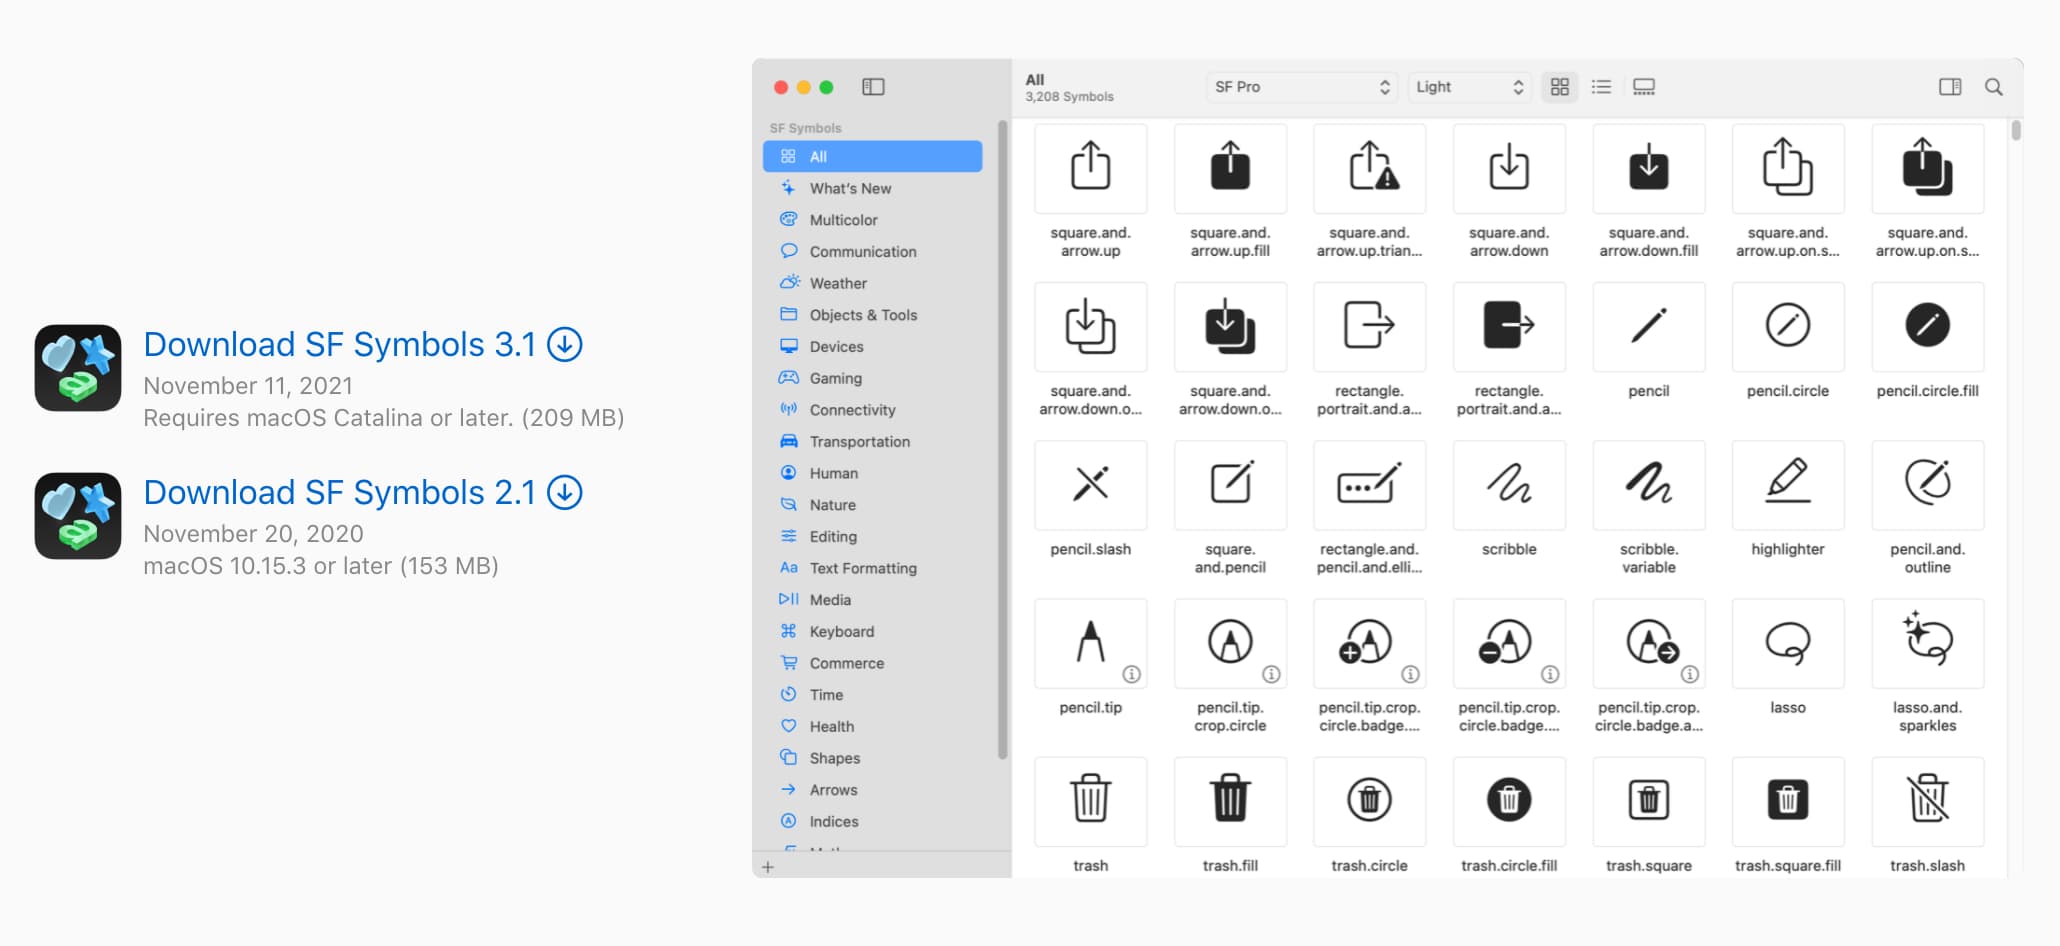 蘋果設計資源免費下載，提供各種設備模板素材、字體與資源3